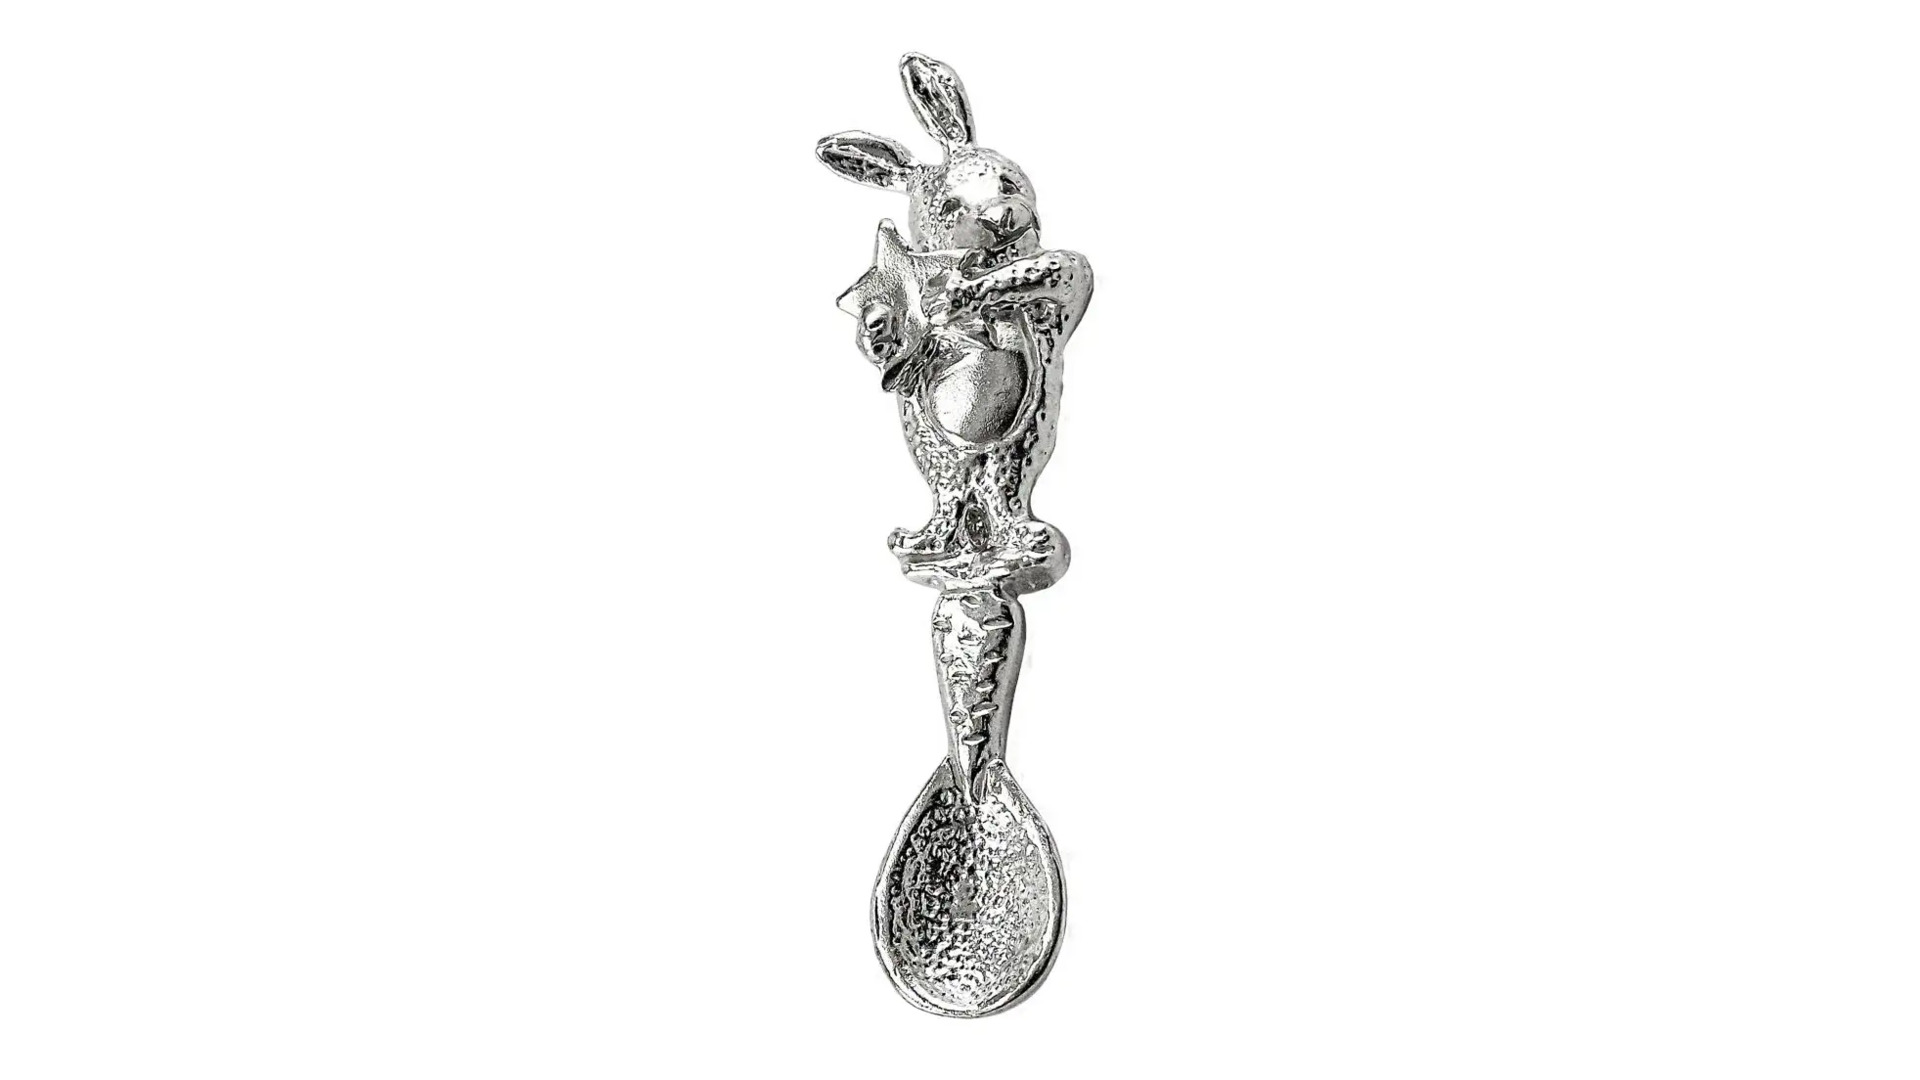 Ложка сувенирная АргентА Кролик 5,73 г, серебро 925